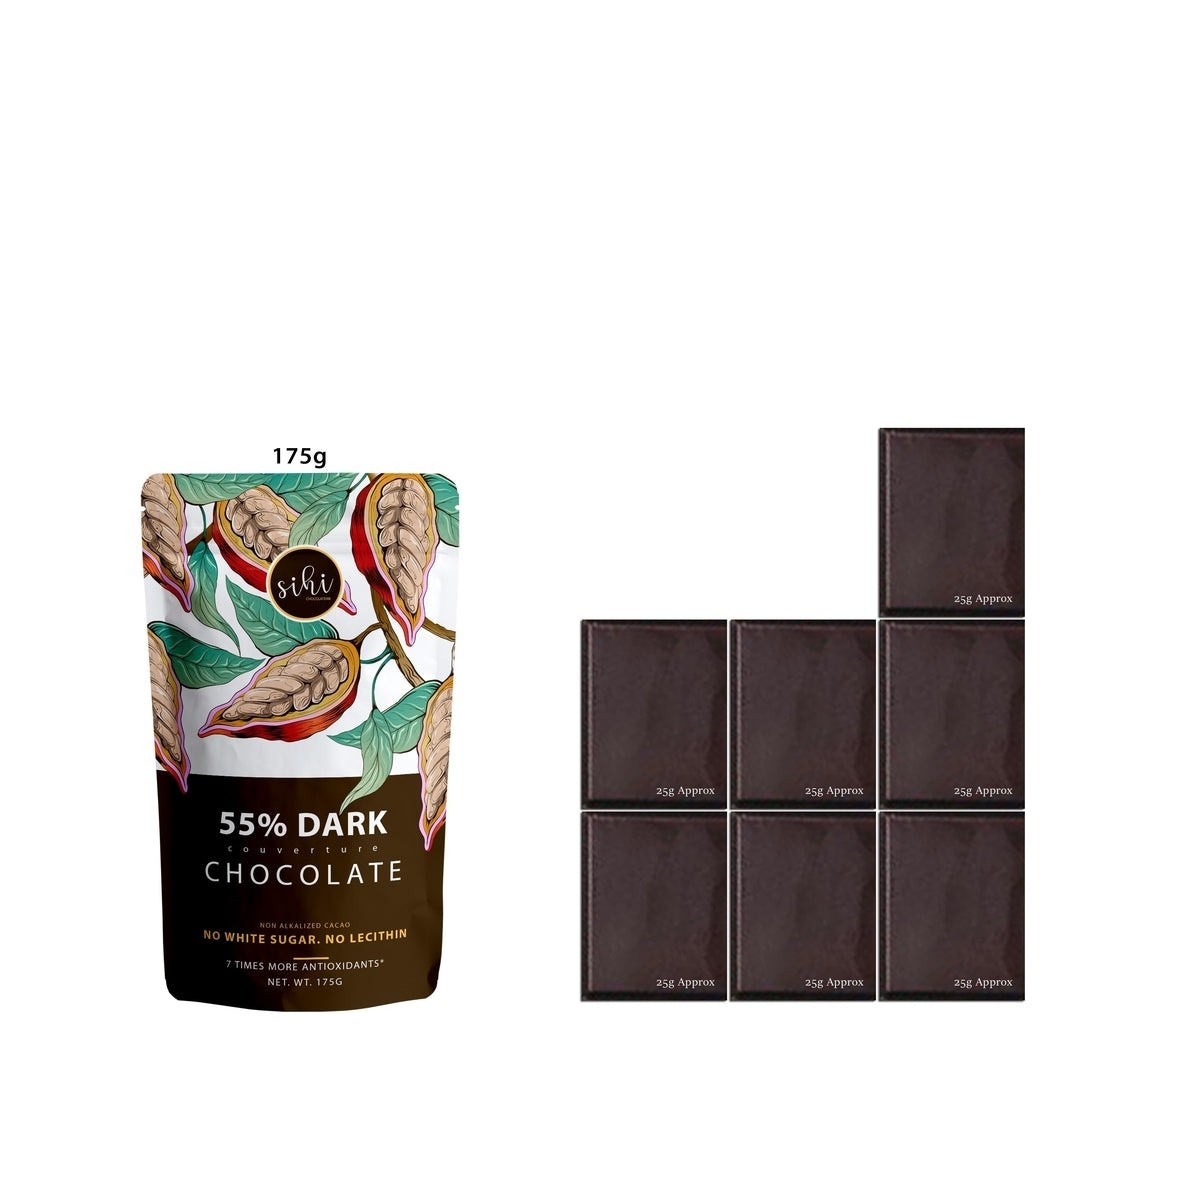 55% Dark Chocolate - Vegan Dark Chocolate